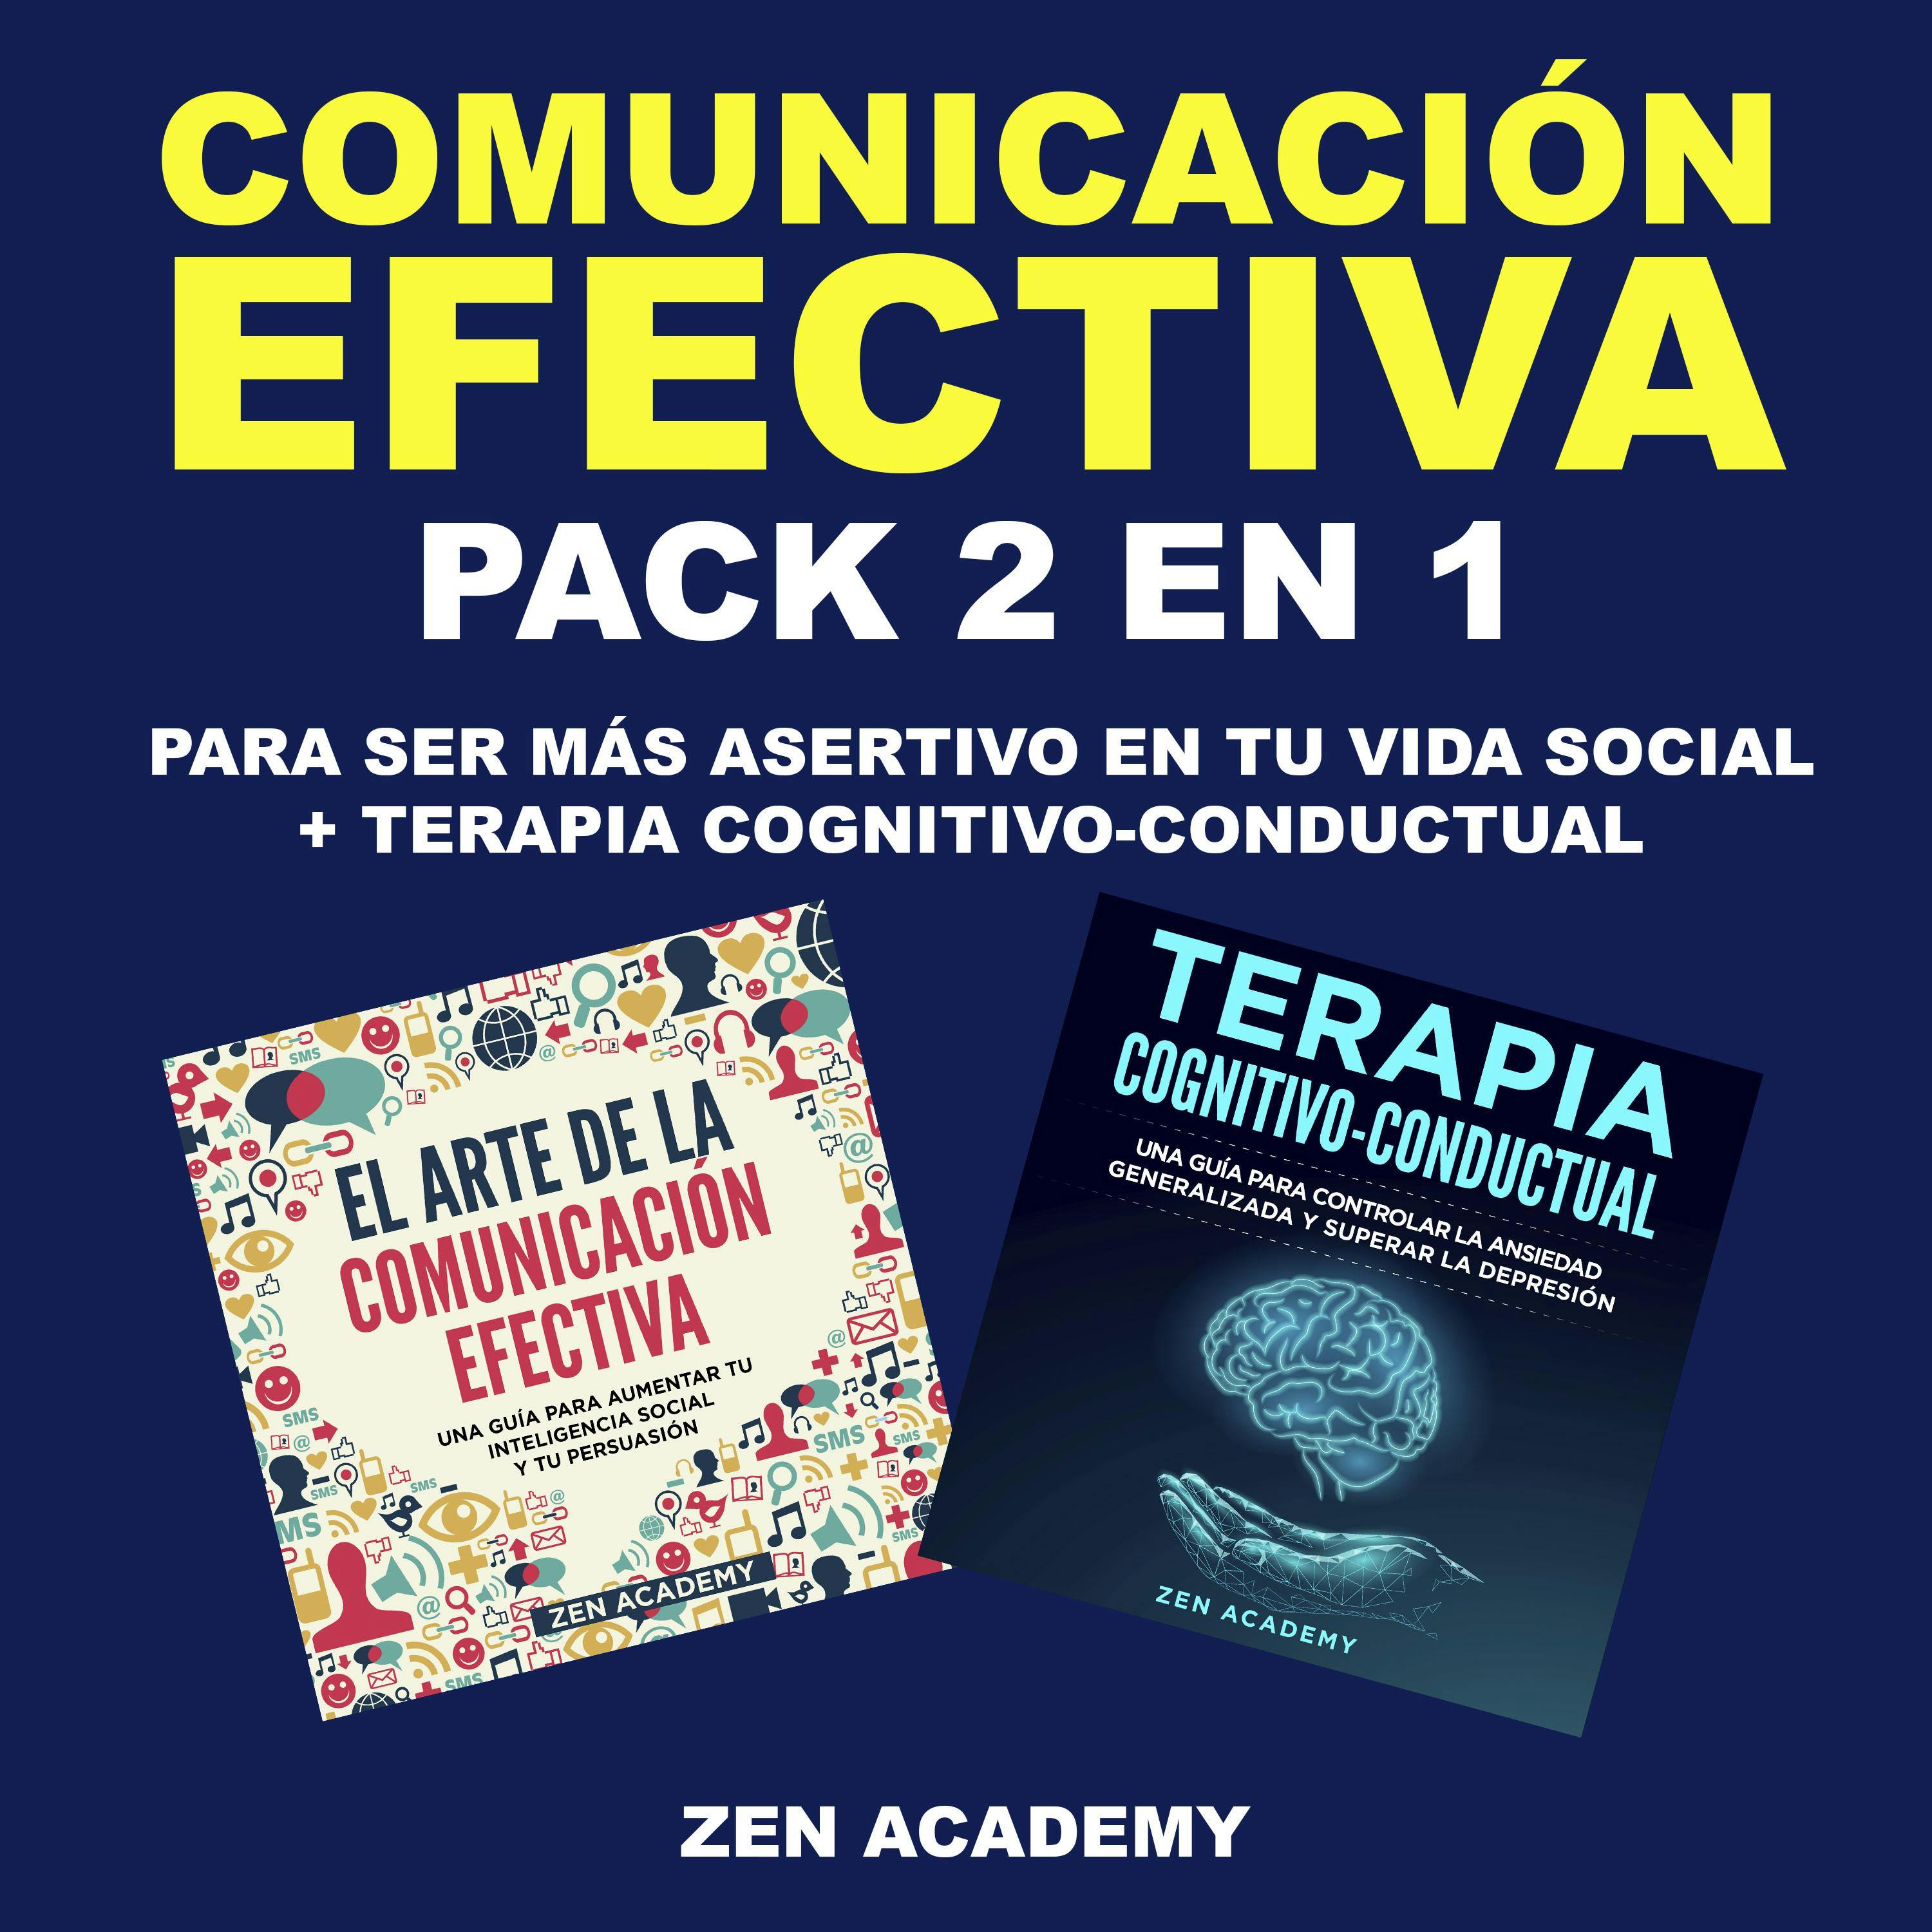 Comunicación Efectiva: Pack 2 en 1 para ser más asertivo en tu vida social + Terapia Cognitivo-Conductual - Zen Academy